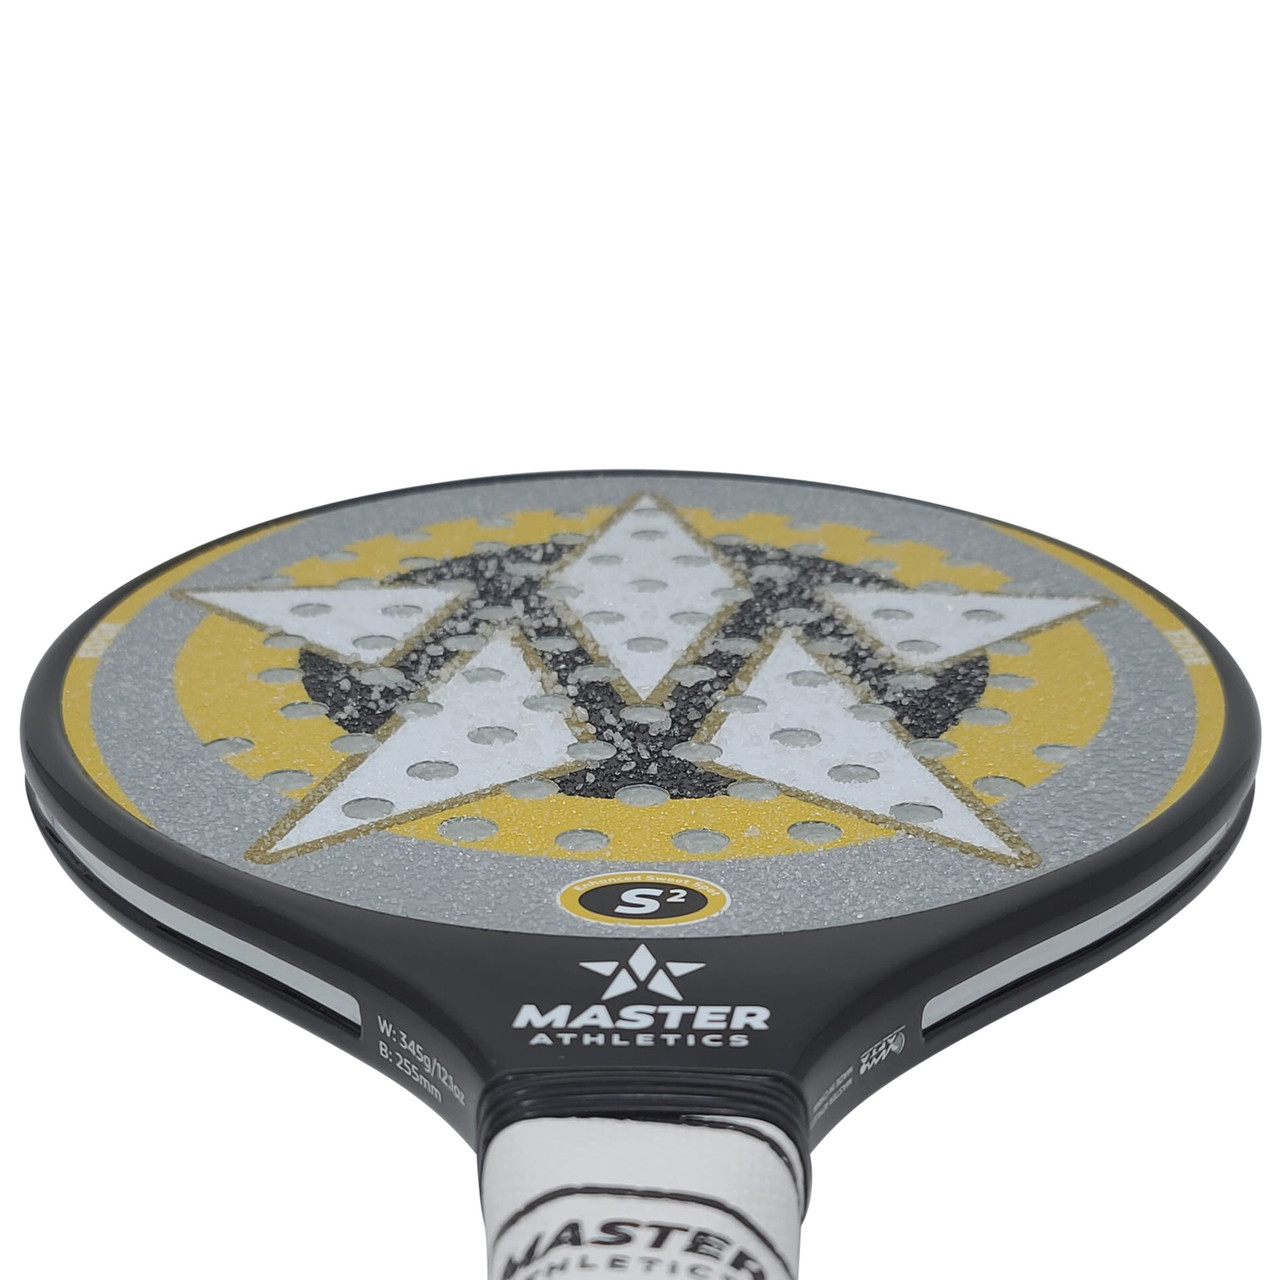 Grip Dot Platform Tennis / Paddle Tennis Gloves, Men's